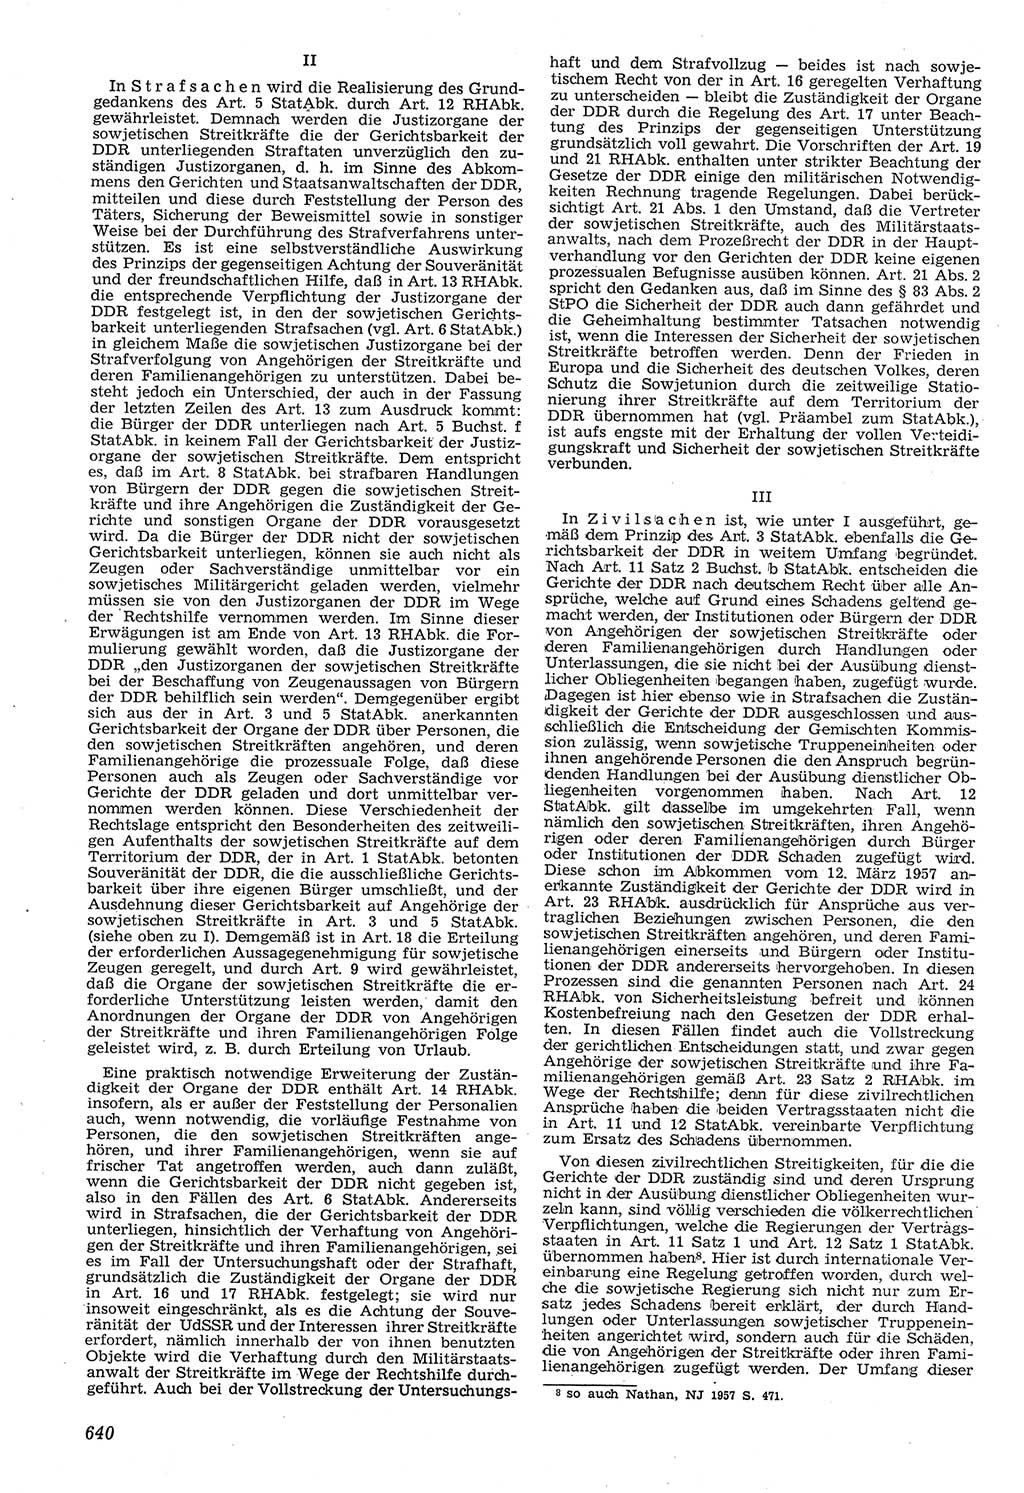 Neue Justiz (NJ), Zeitschrift für Recht und Rechtswissenschaft [Deutsche Demokratische Republik (DDR)], 11. Jahrgang 1957, Seite 640 (NJ DDR 1957, S. 640)